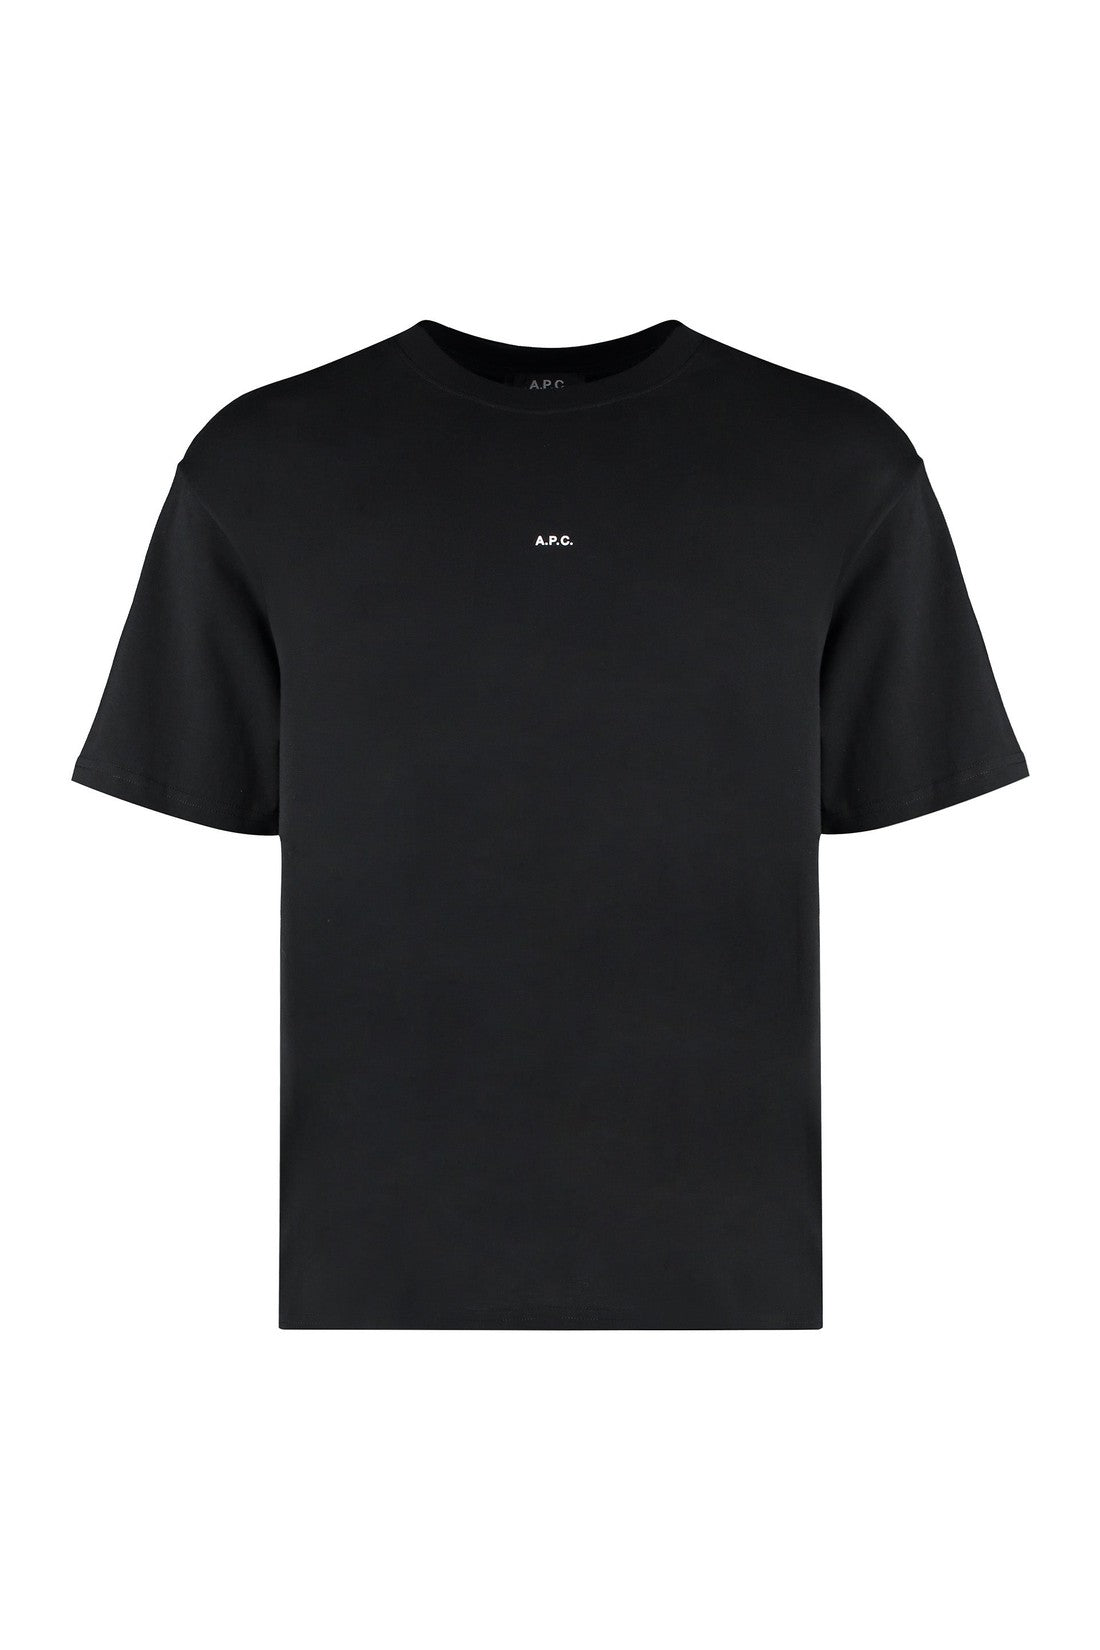 A.P.C.-OUTLET-SALE-Kyle cotton crew-neck T-shirt-ARCHIVIST